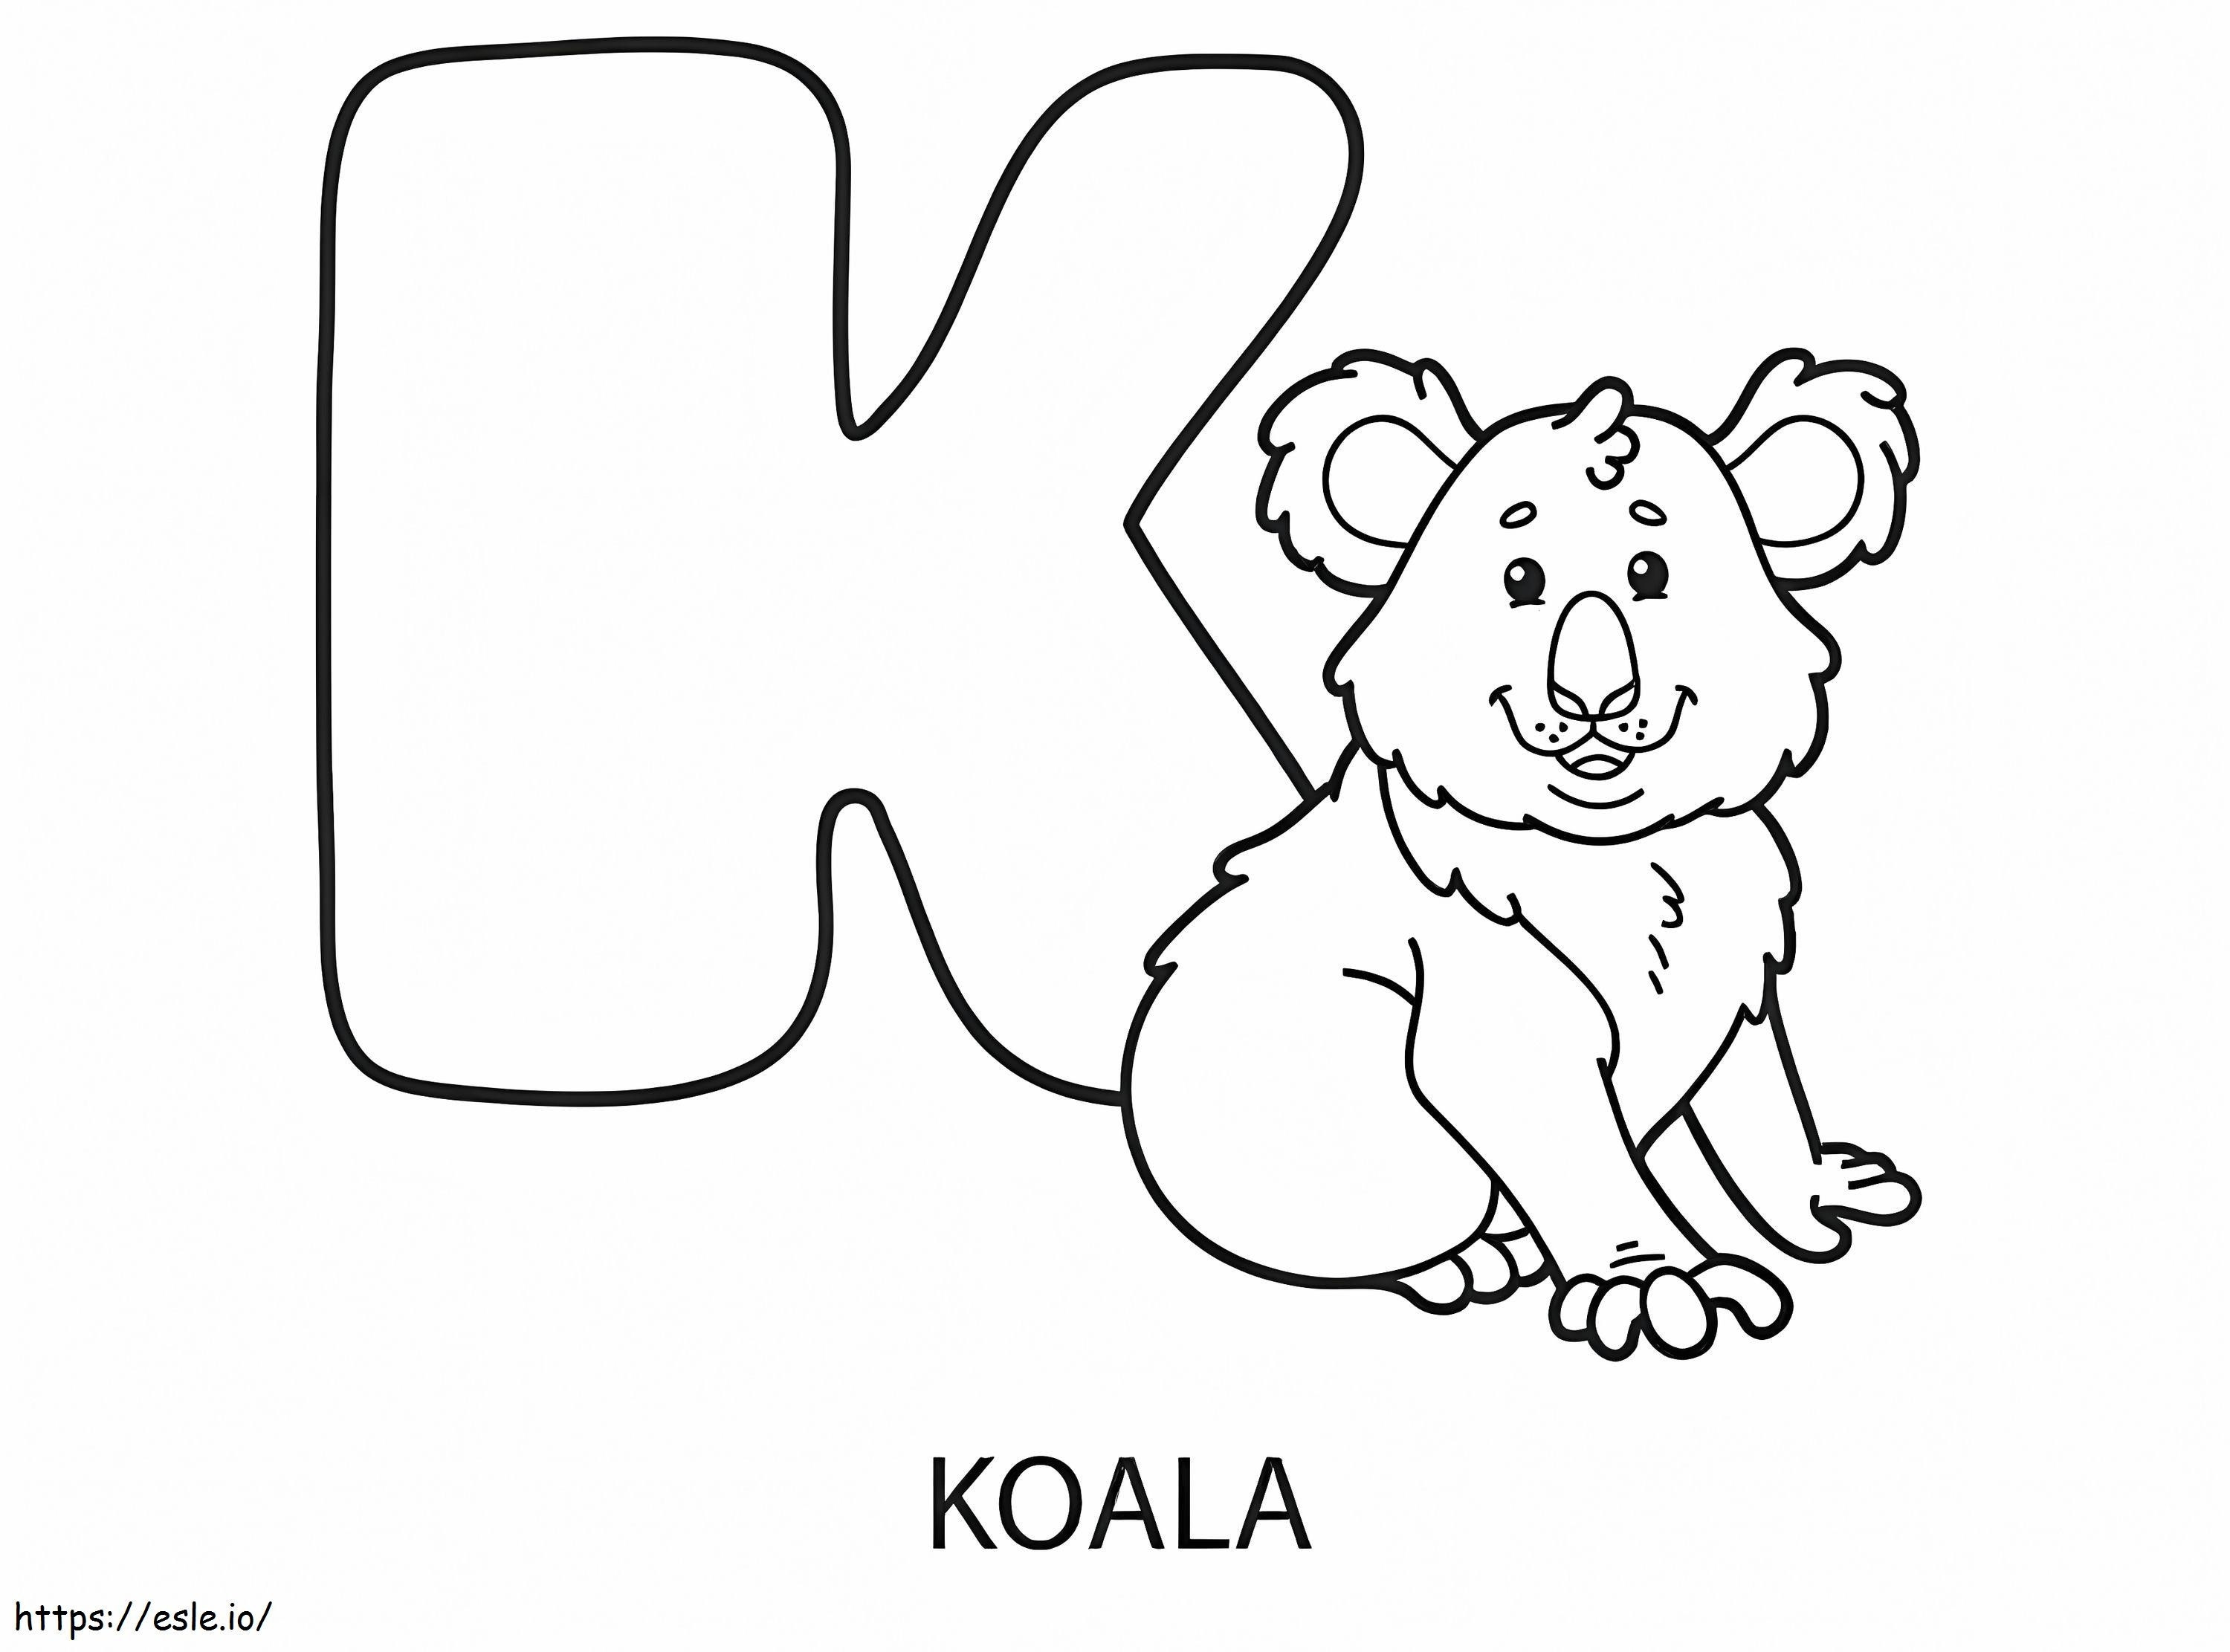 Lettera K e Koala da colorare